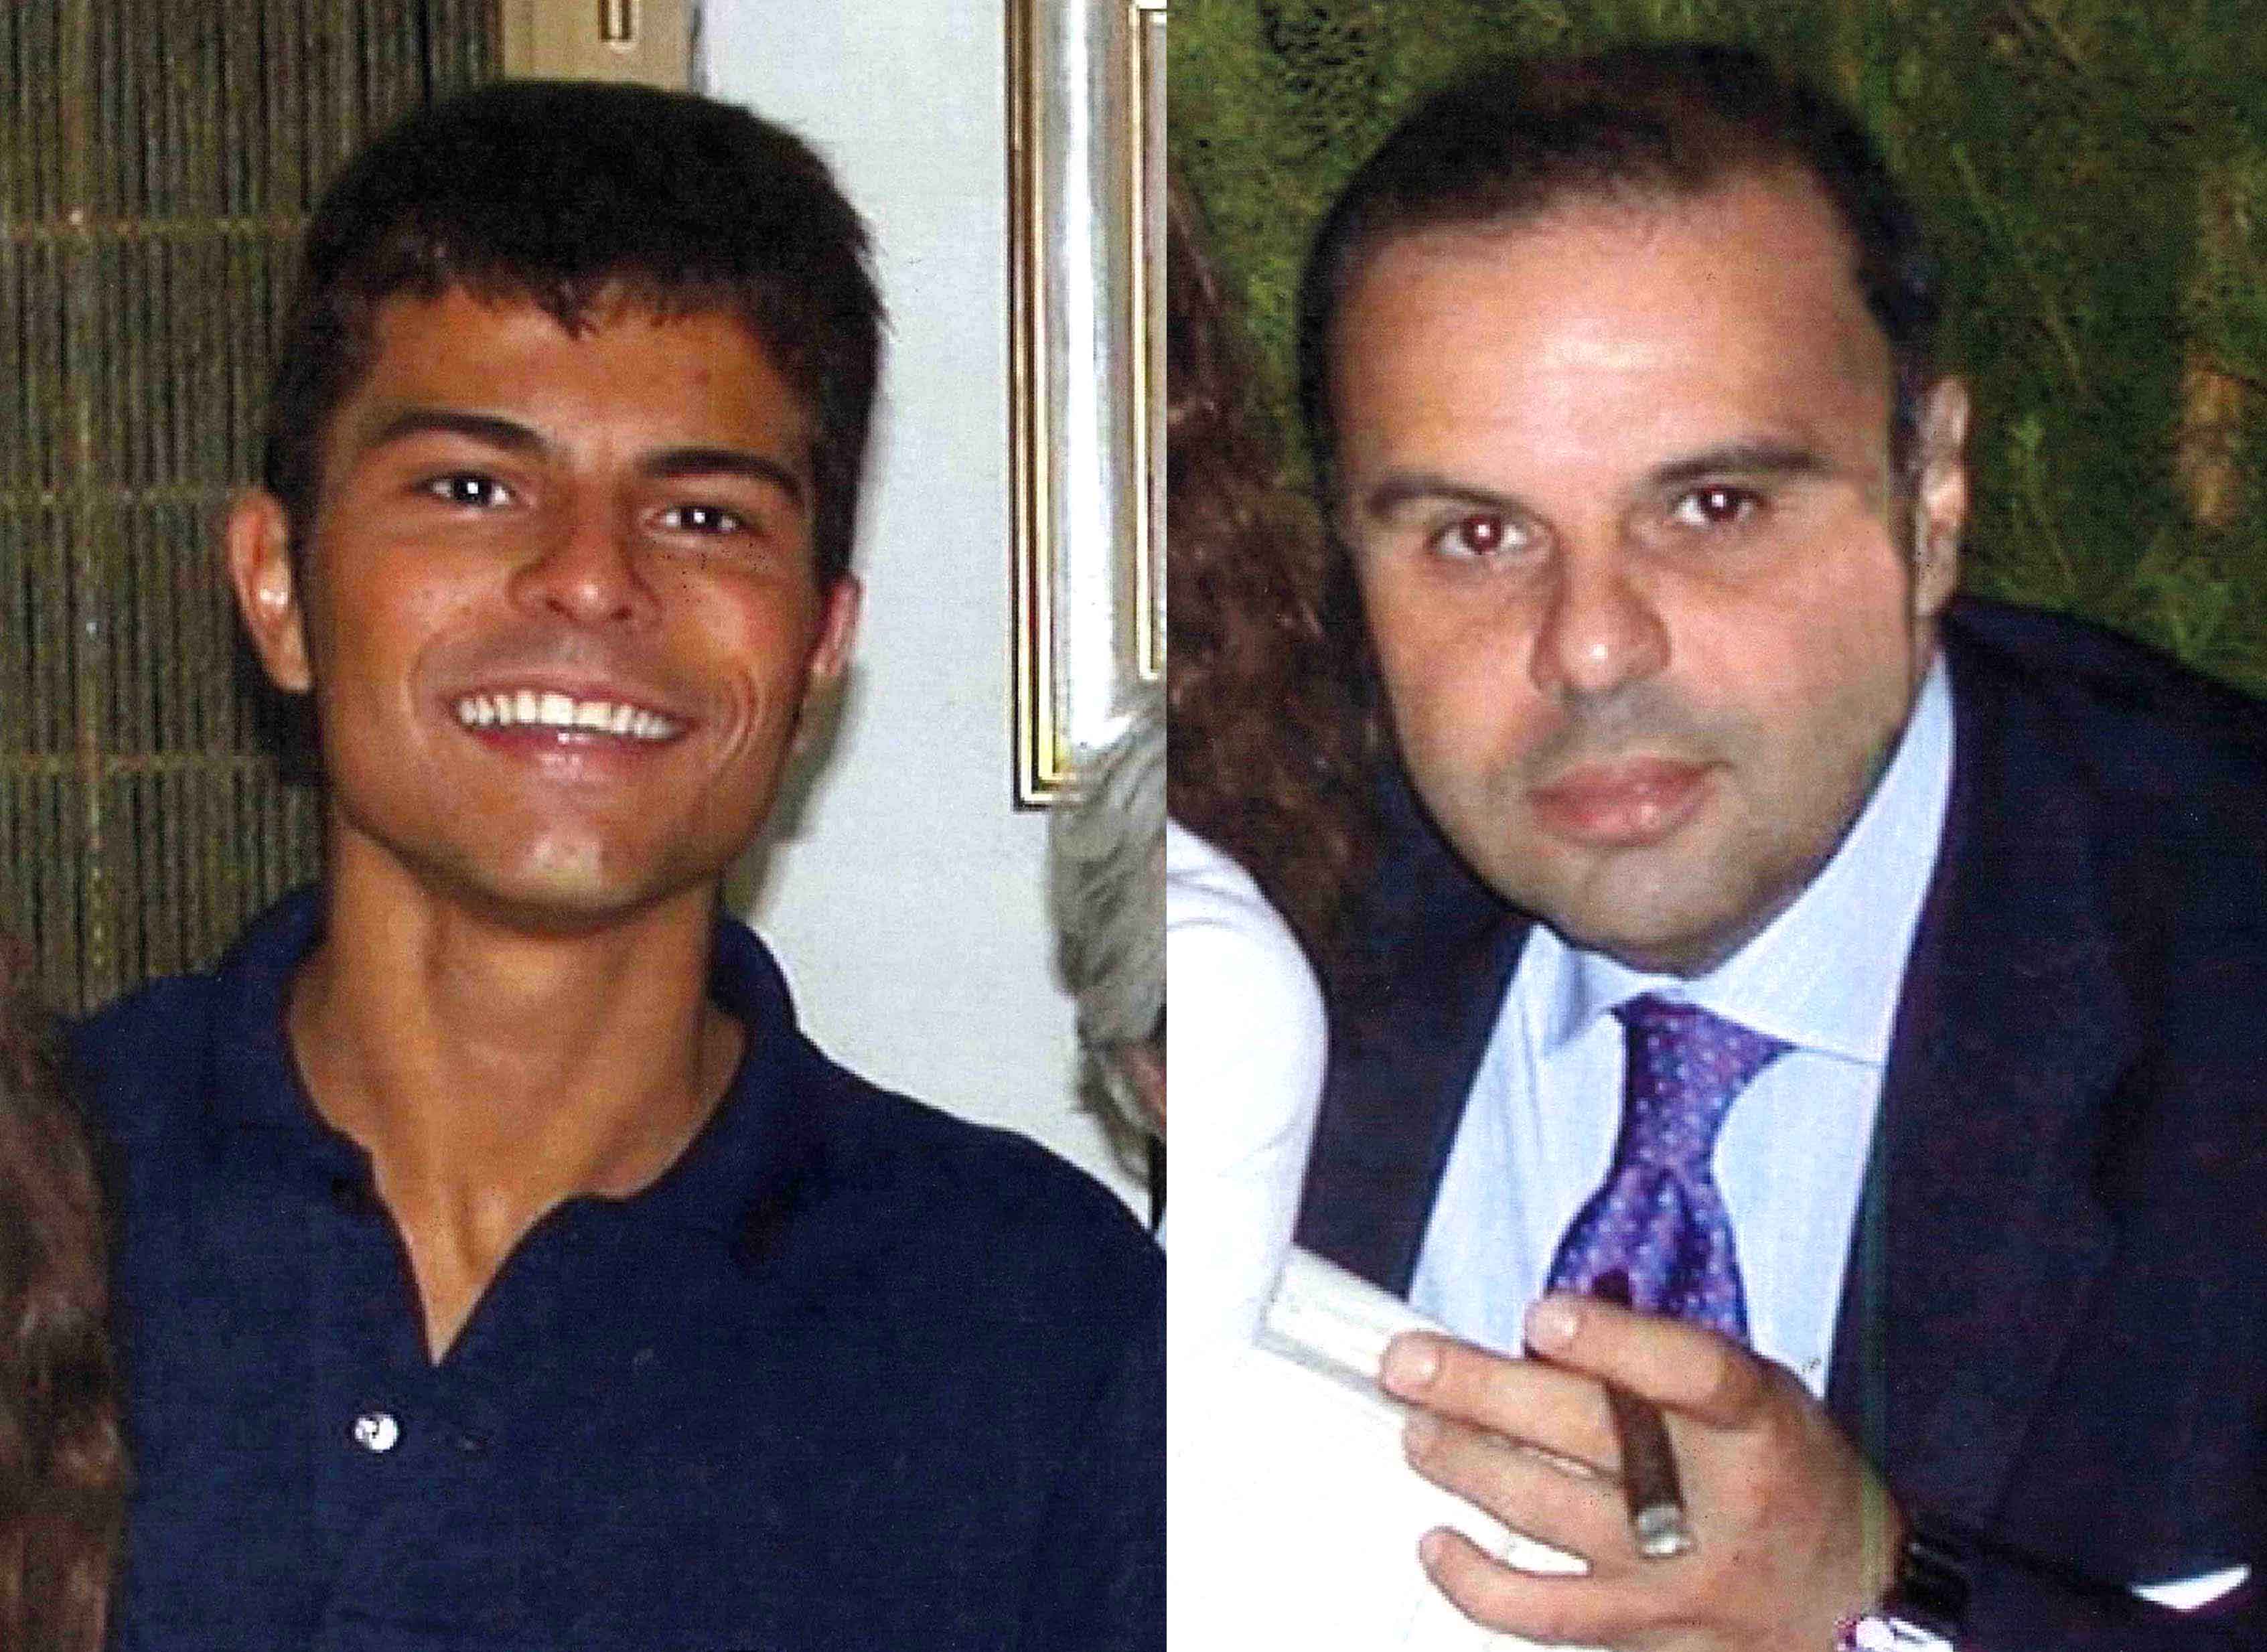 Imprenditori scomparsi a Palermo, gip no archiviazione ma nuove indagini